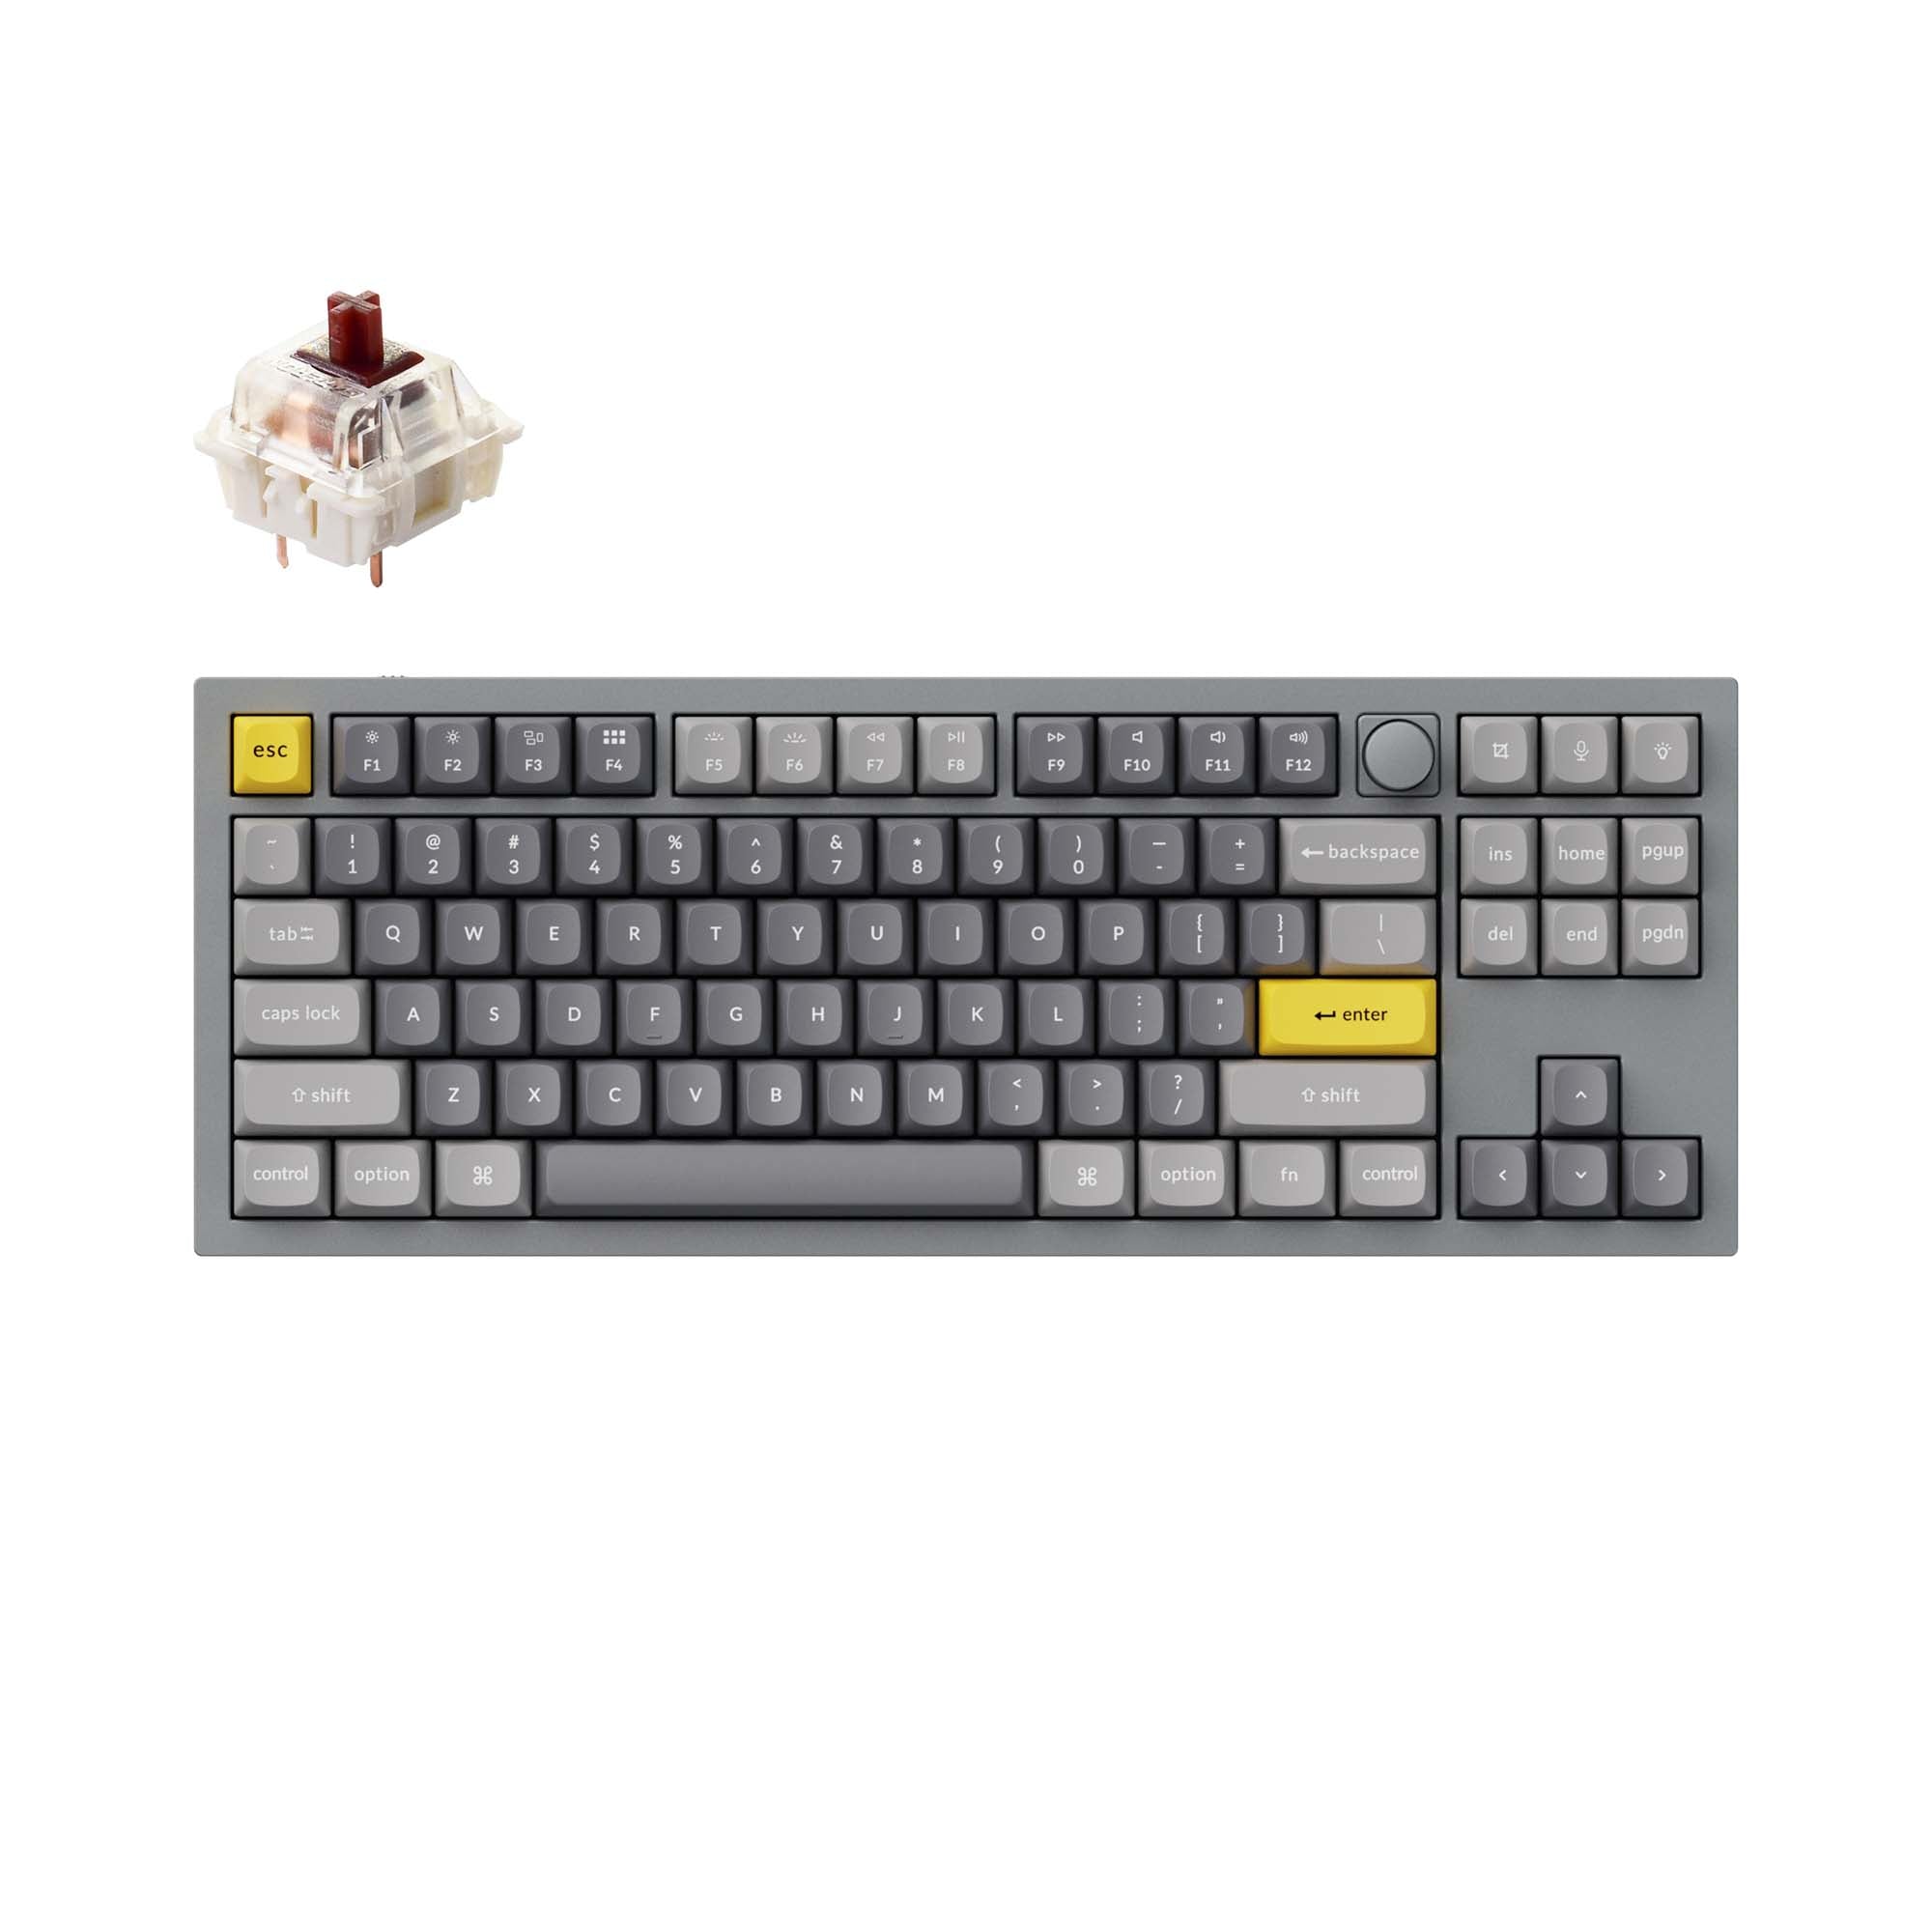 Keychron-Q3-tkl-qmk-custom-mechanical-keyboard-knob-version-grey-brown-B